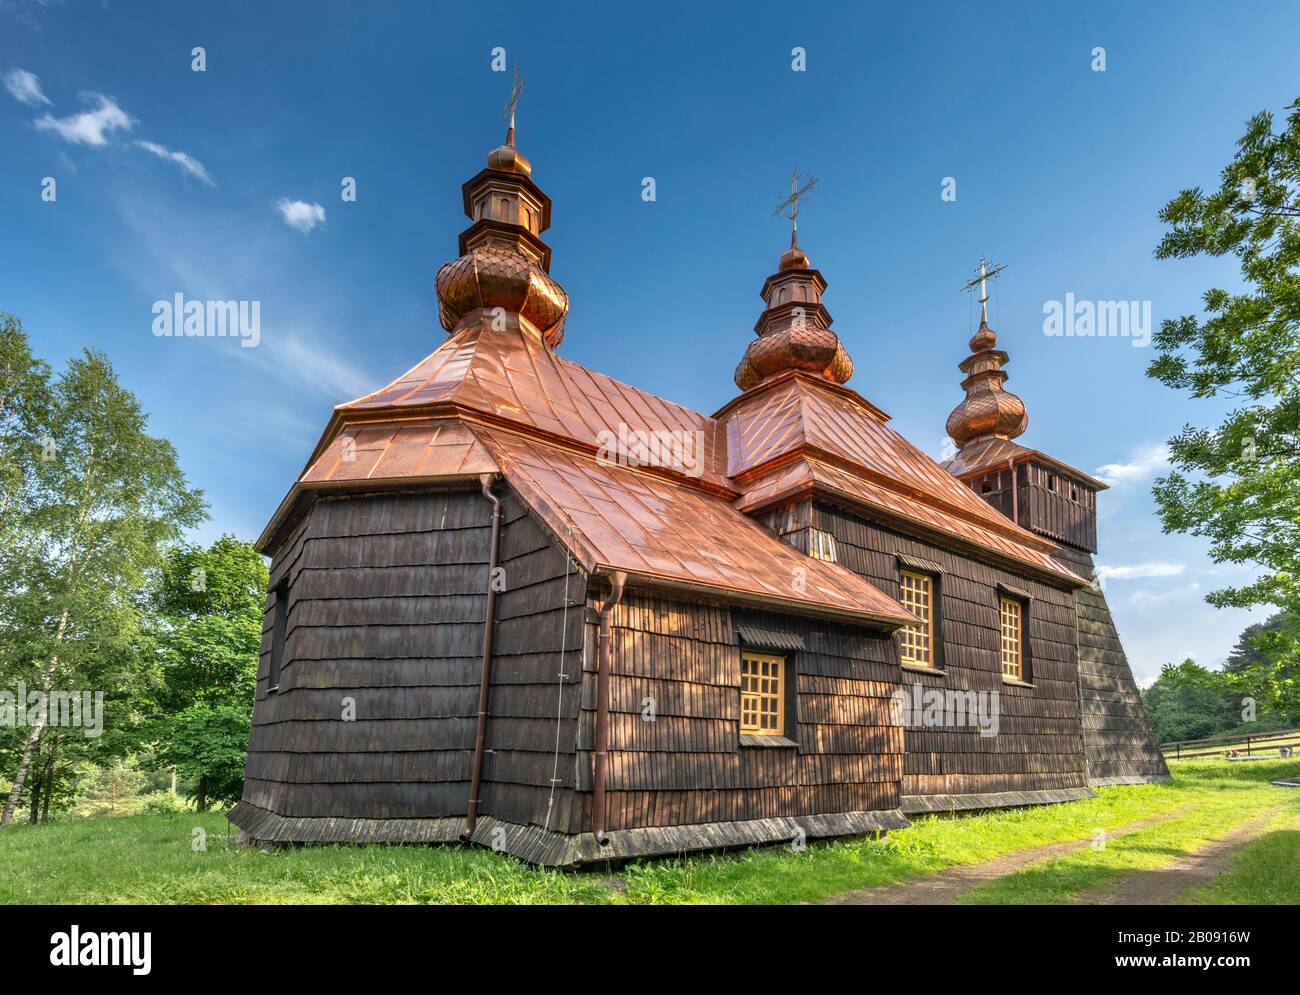 Chiesa di San Lucas, 1868, edificio di tronchi, greco cattolico, ora ortodossa orientale, nel villaggio di Kunkowa, Beskids, Carpazi occidentali, Malopolska, Polonia Foto Stock